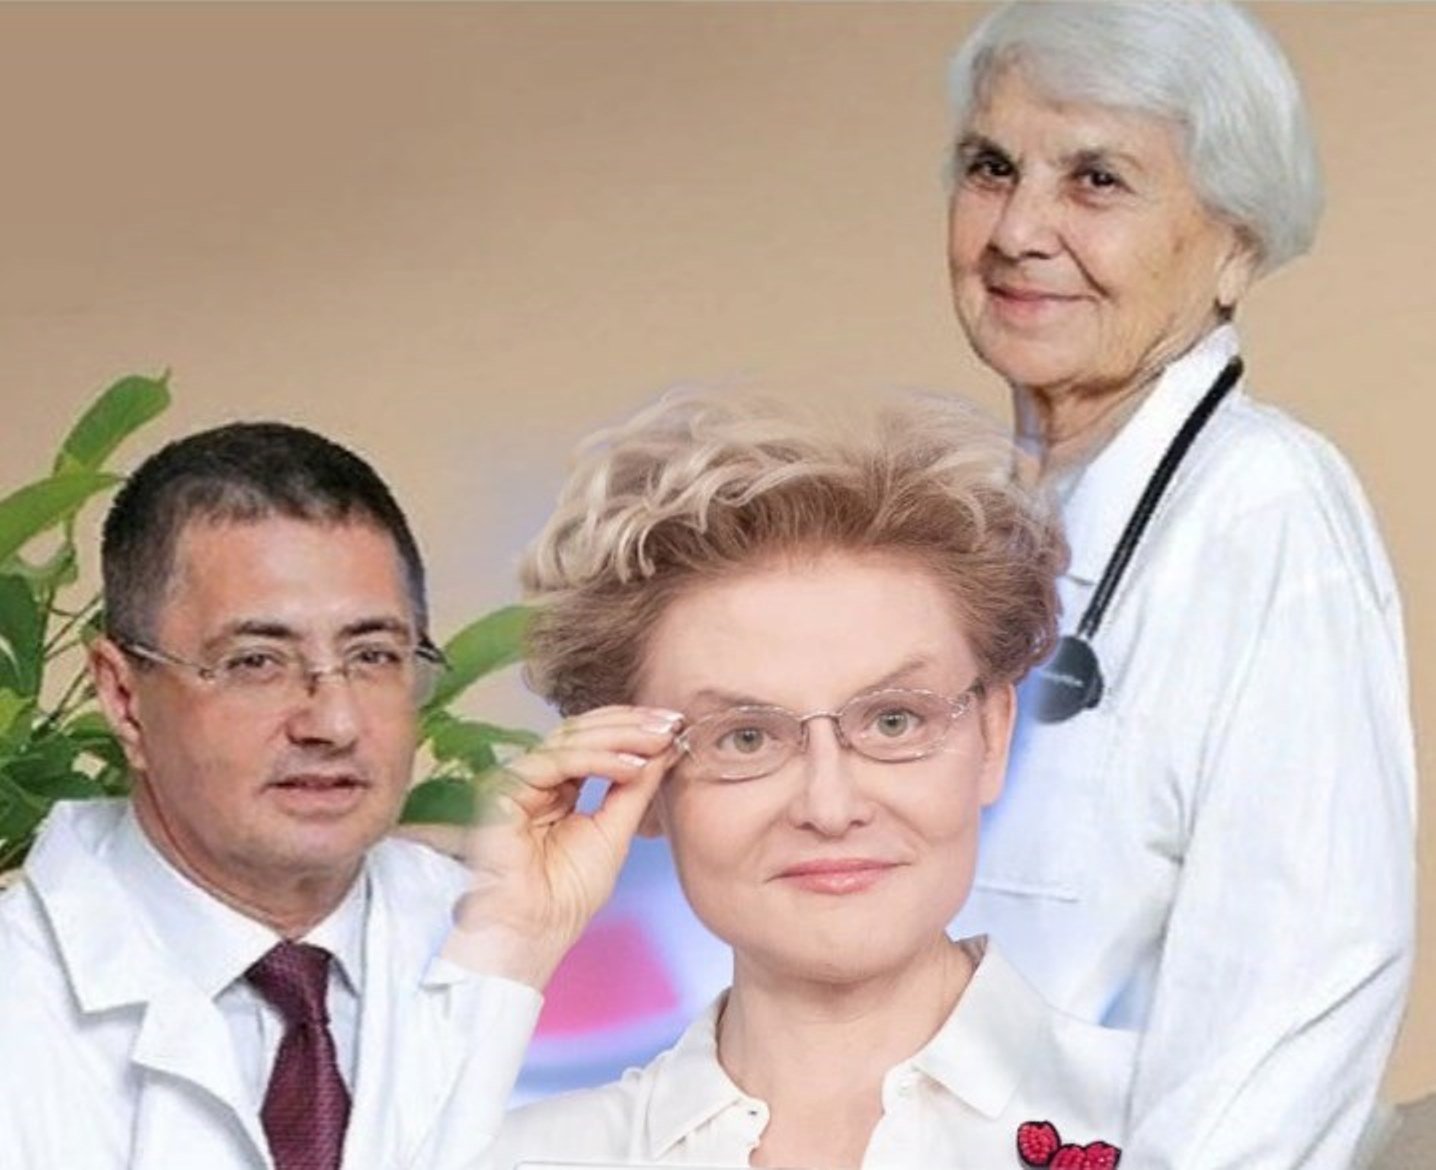 биография доктора мясникова фото жены и детей